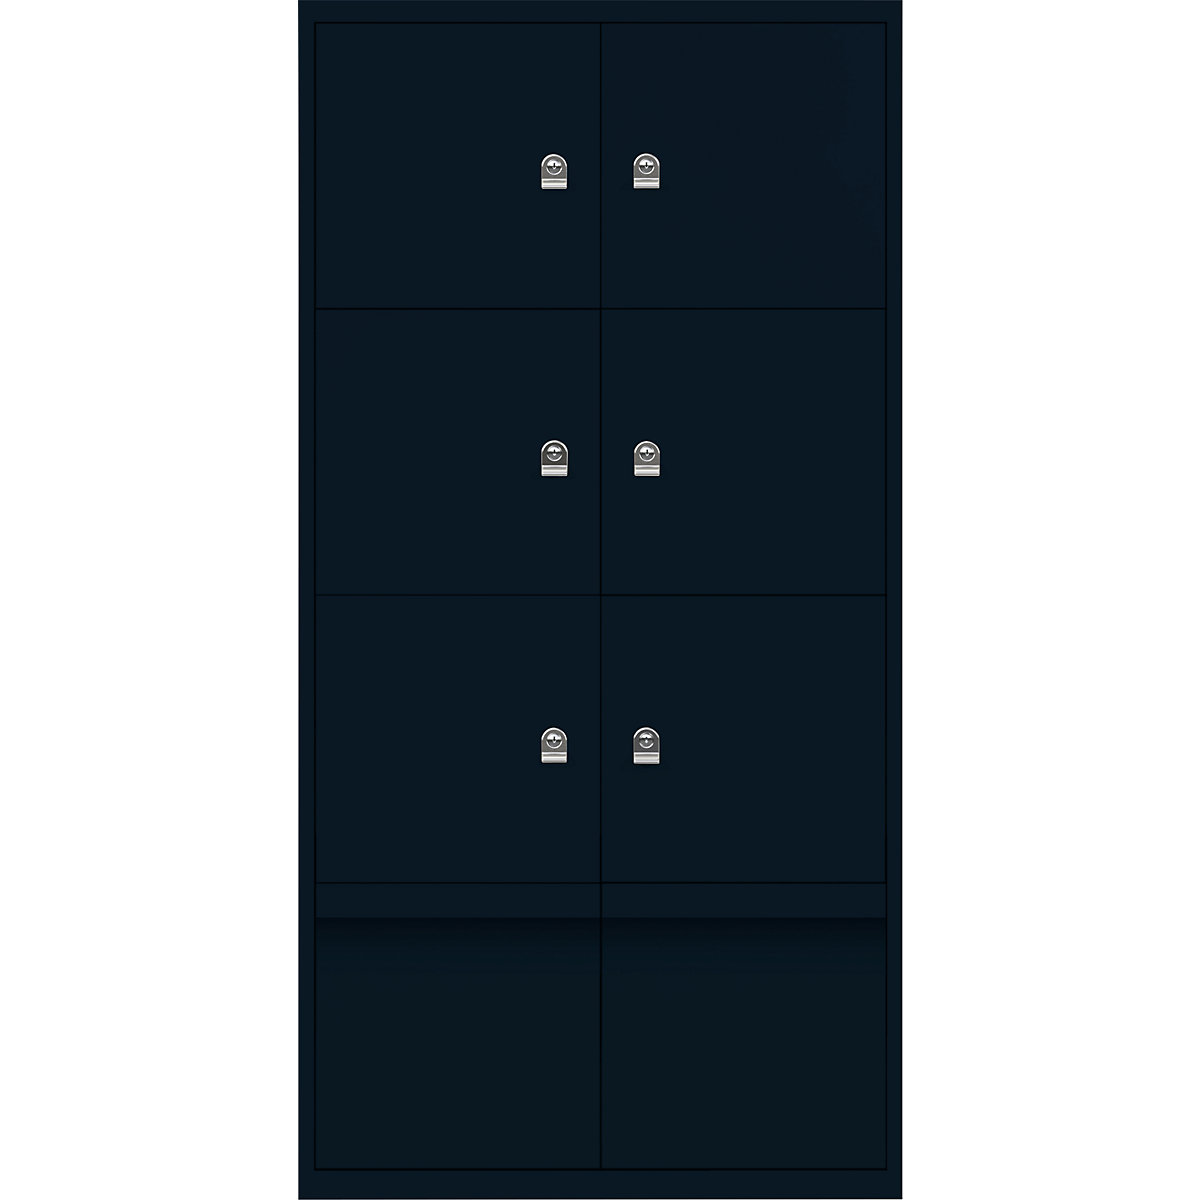 Omara s predelki z zaklepanjem LateralFile™ – BISLEY, 6 predelkov z zaklepanjem in 2 predala, višina po 375 mm, prusko modre barve-7